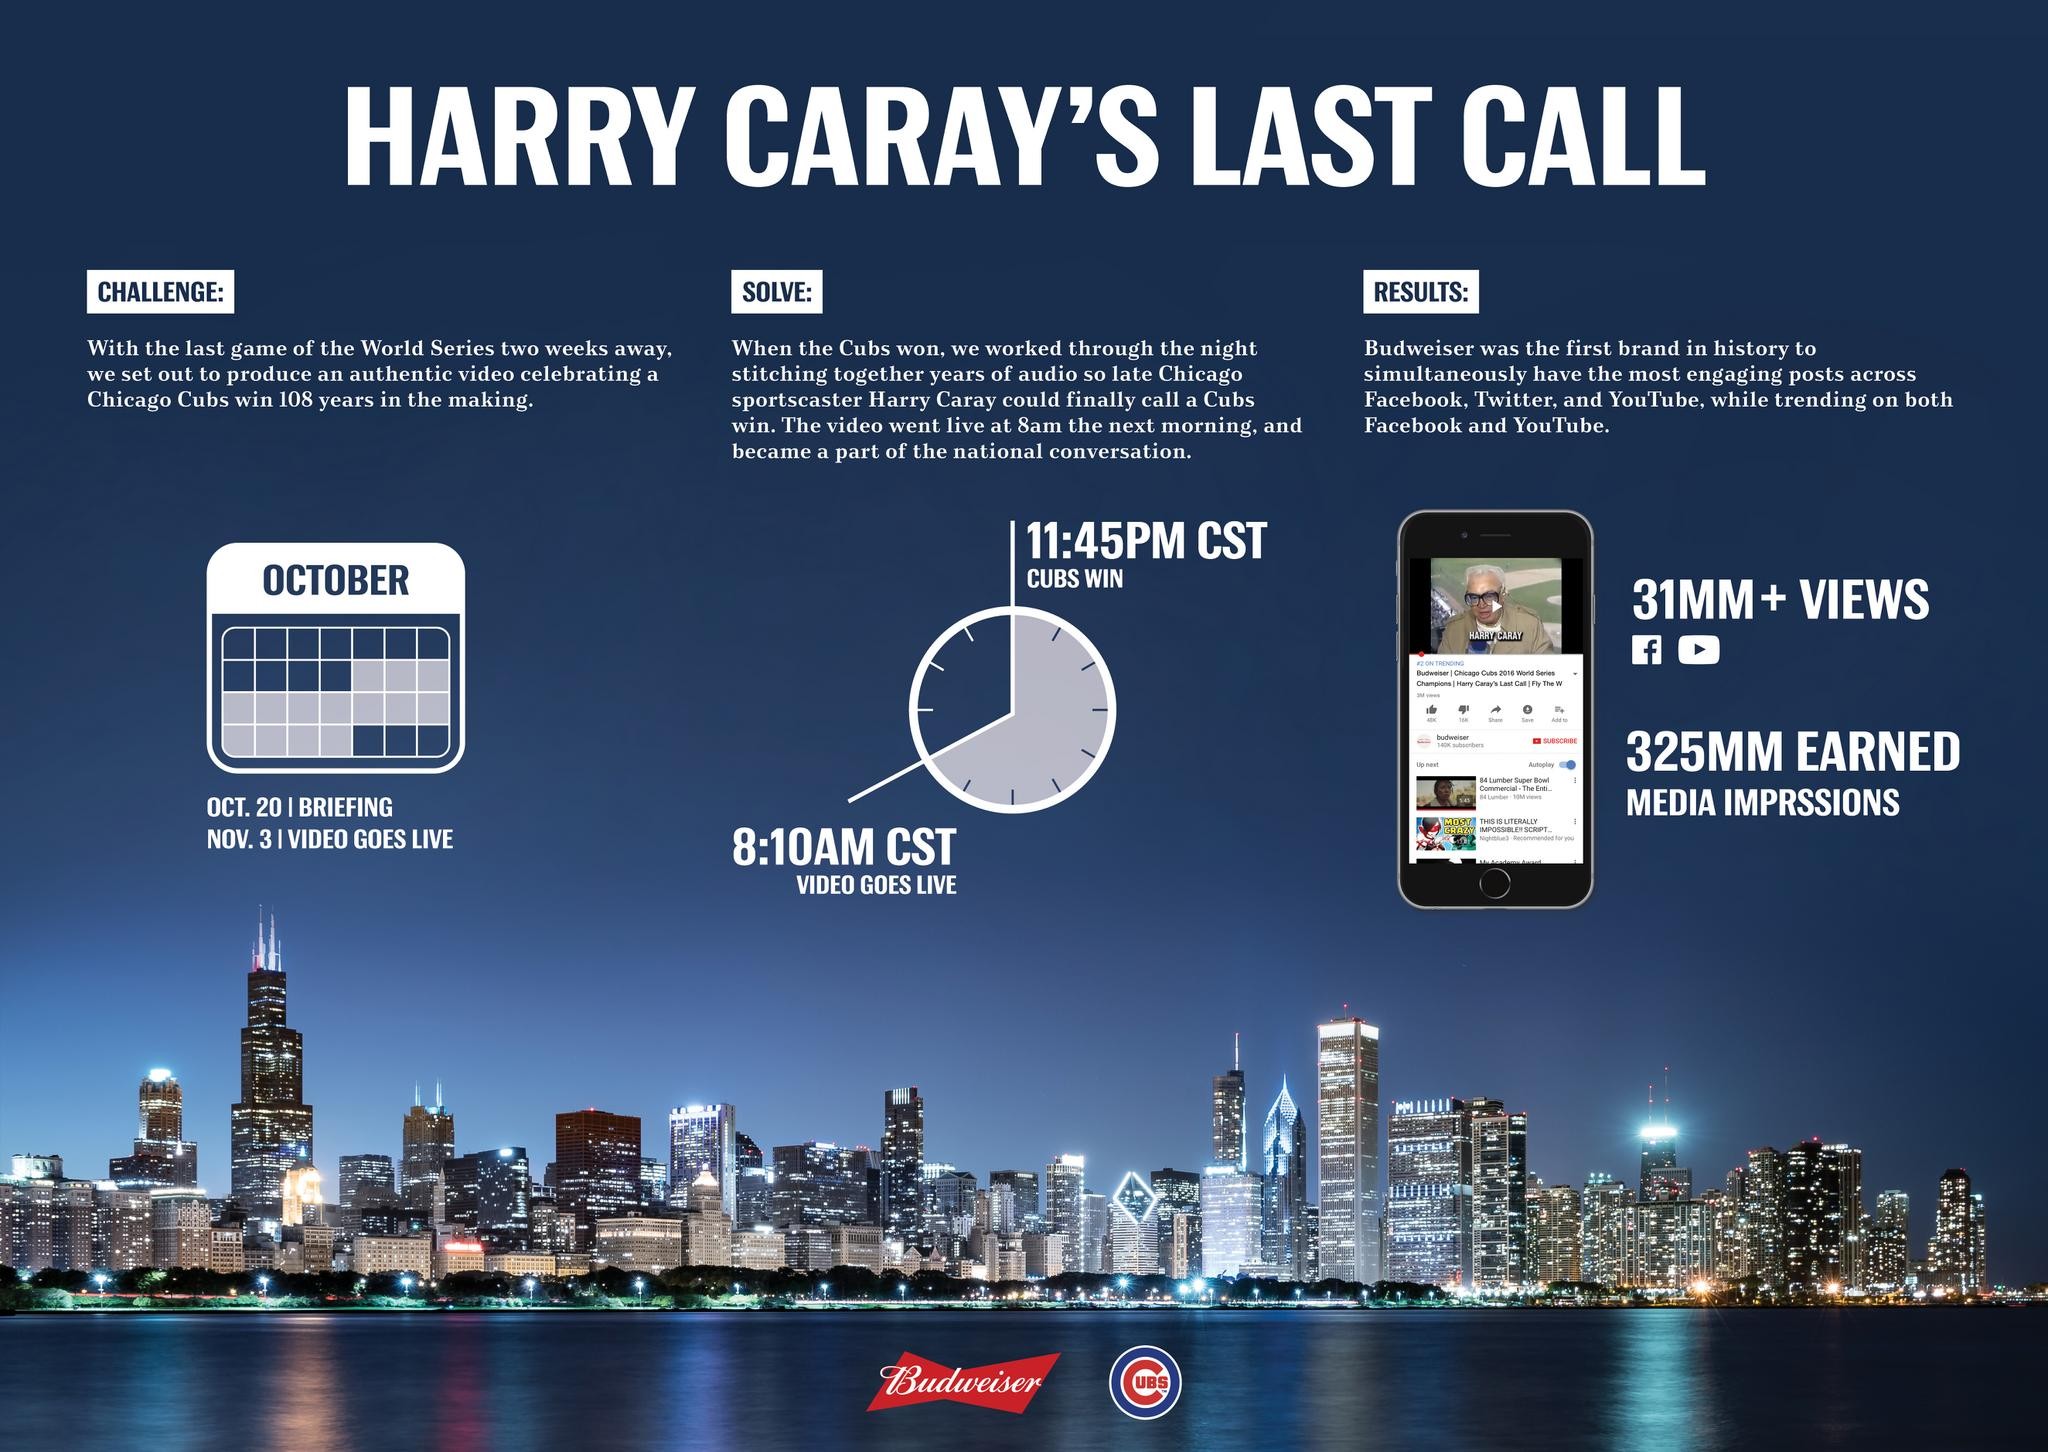 Harry Caray's Last Call